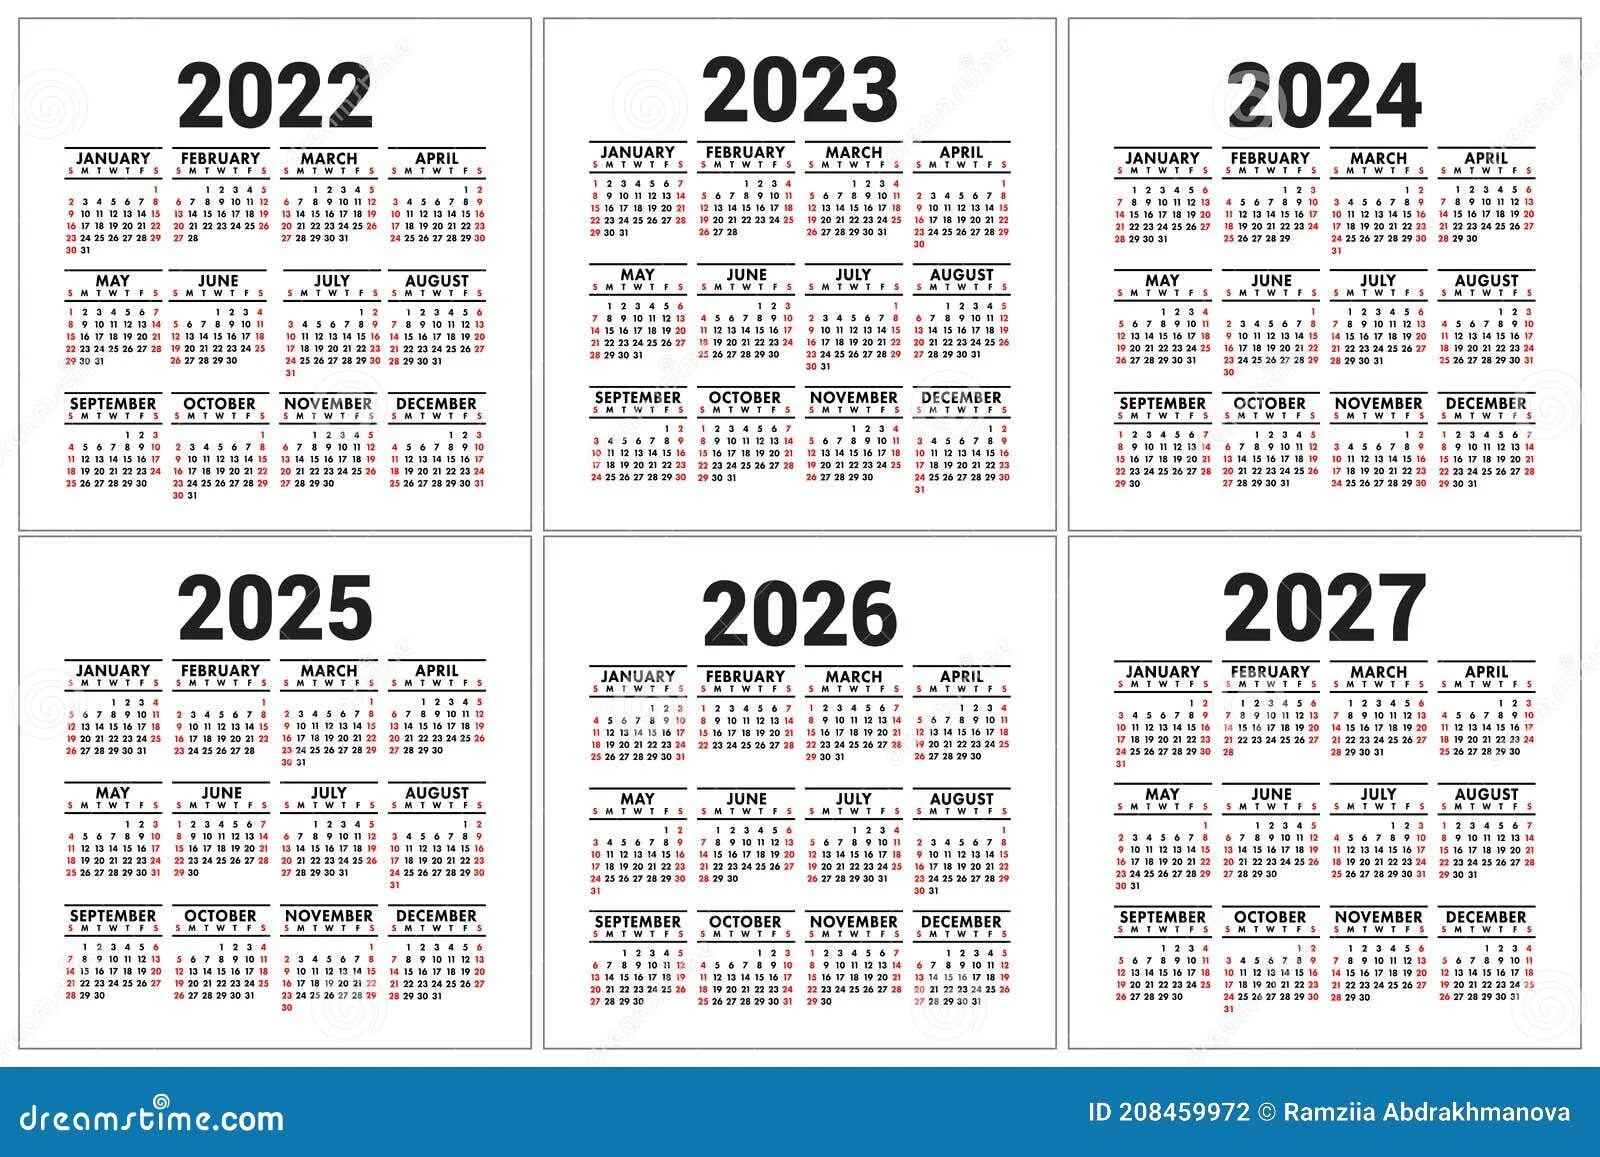 Календарь 2023 2024 2025 2026. Календарь на 2024 2025 2026 2027. Календарь 2022-2023. Календарь 2022 2023 2024. Крымский календарь на 2024 год